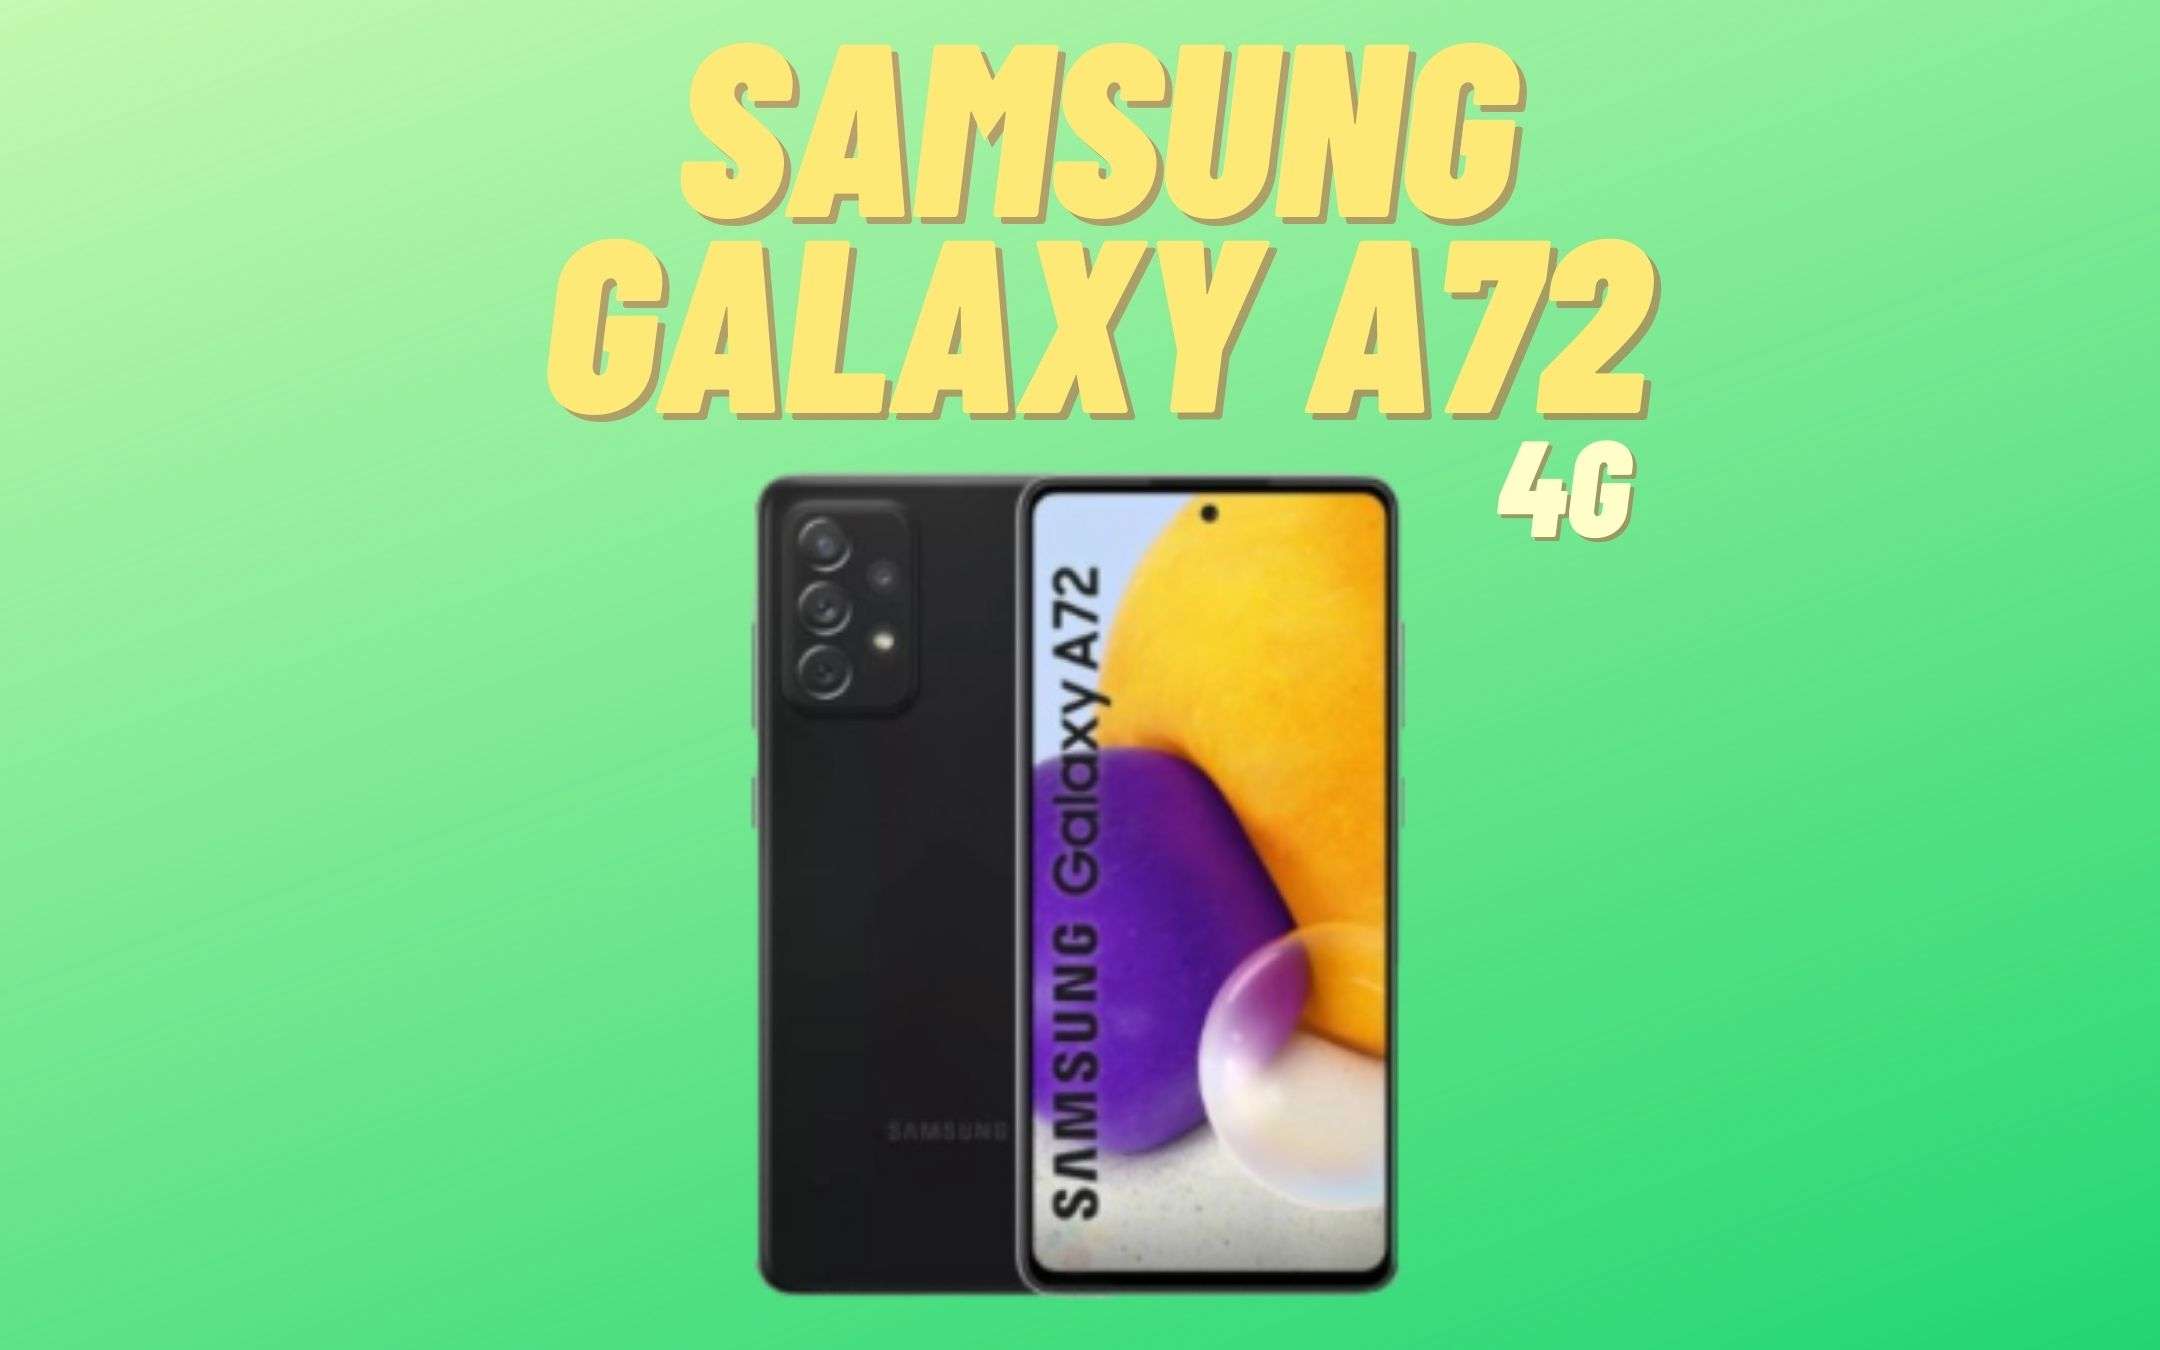 Samsung Galaxy A72 4G è senza segreti, oramai